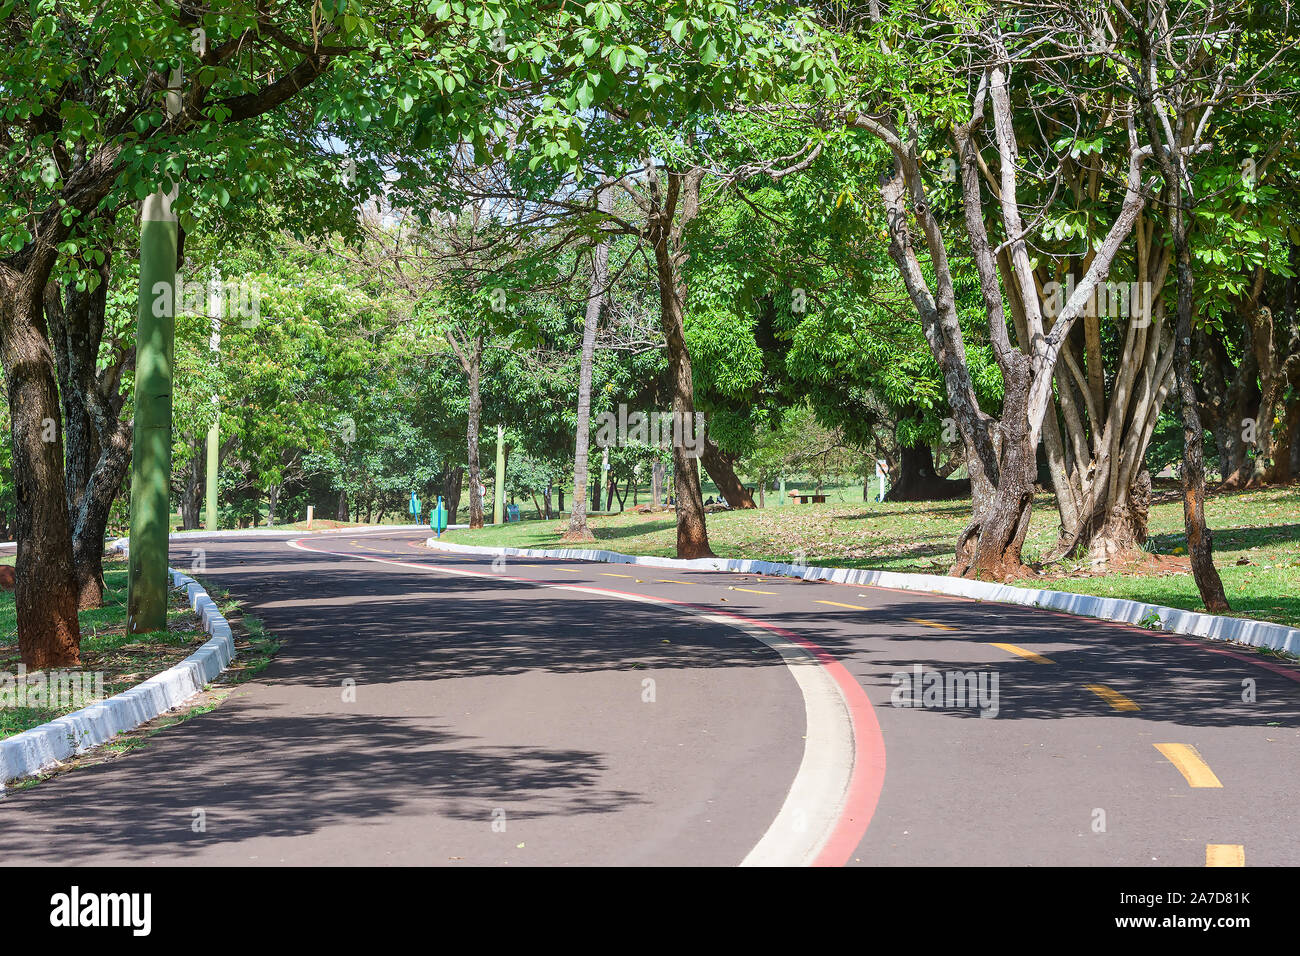 Campo Grande - MS, Brasil - 30 de octubre de 2019: el camino y el carril bici del Parque de las Naciones, rodeado de árboles autóctonos. Foto de stock